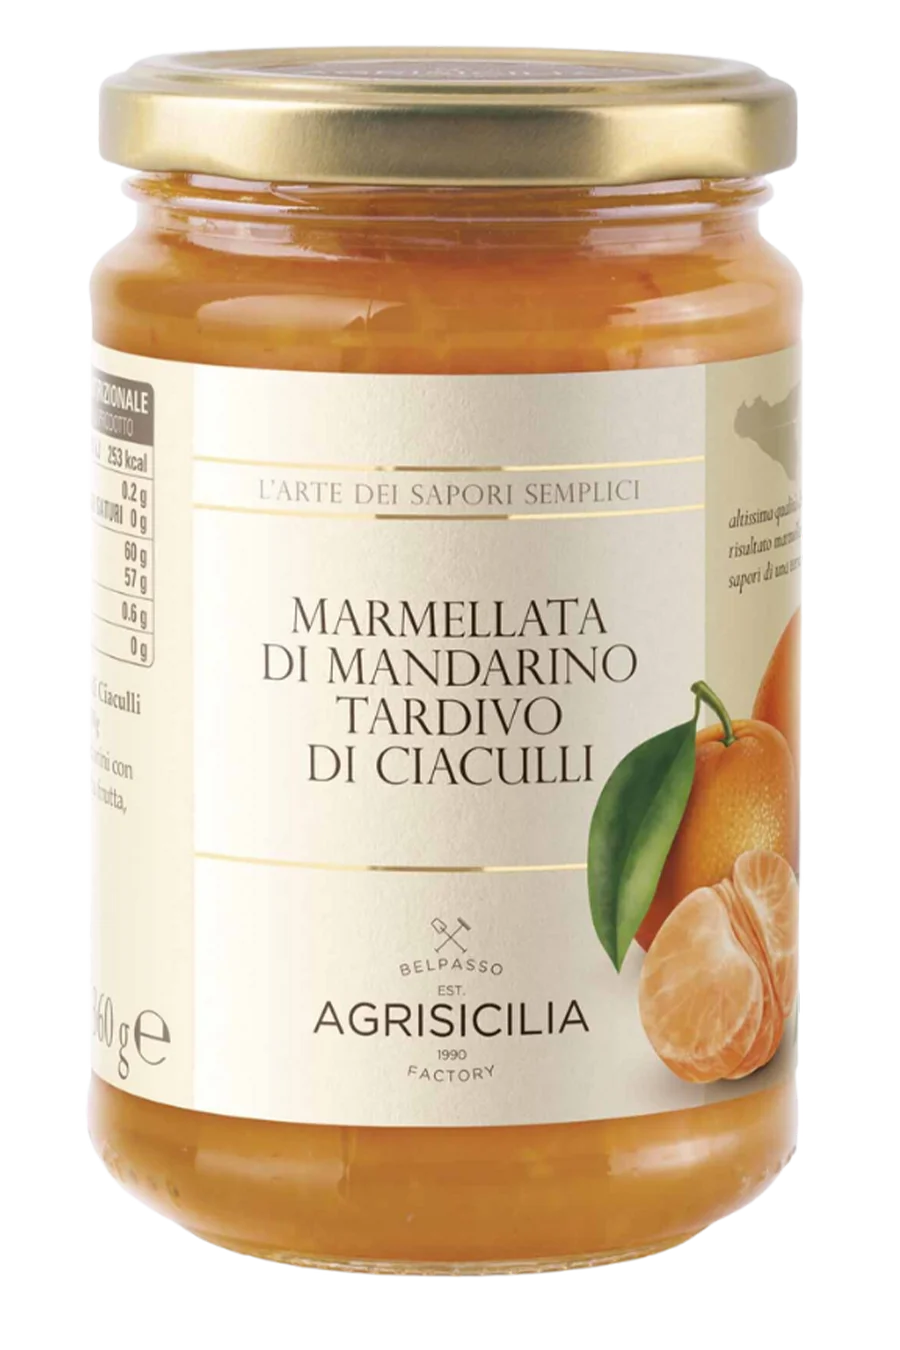 late mandarin of ciaculli